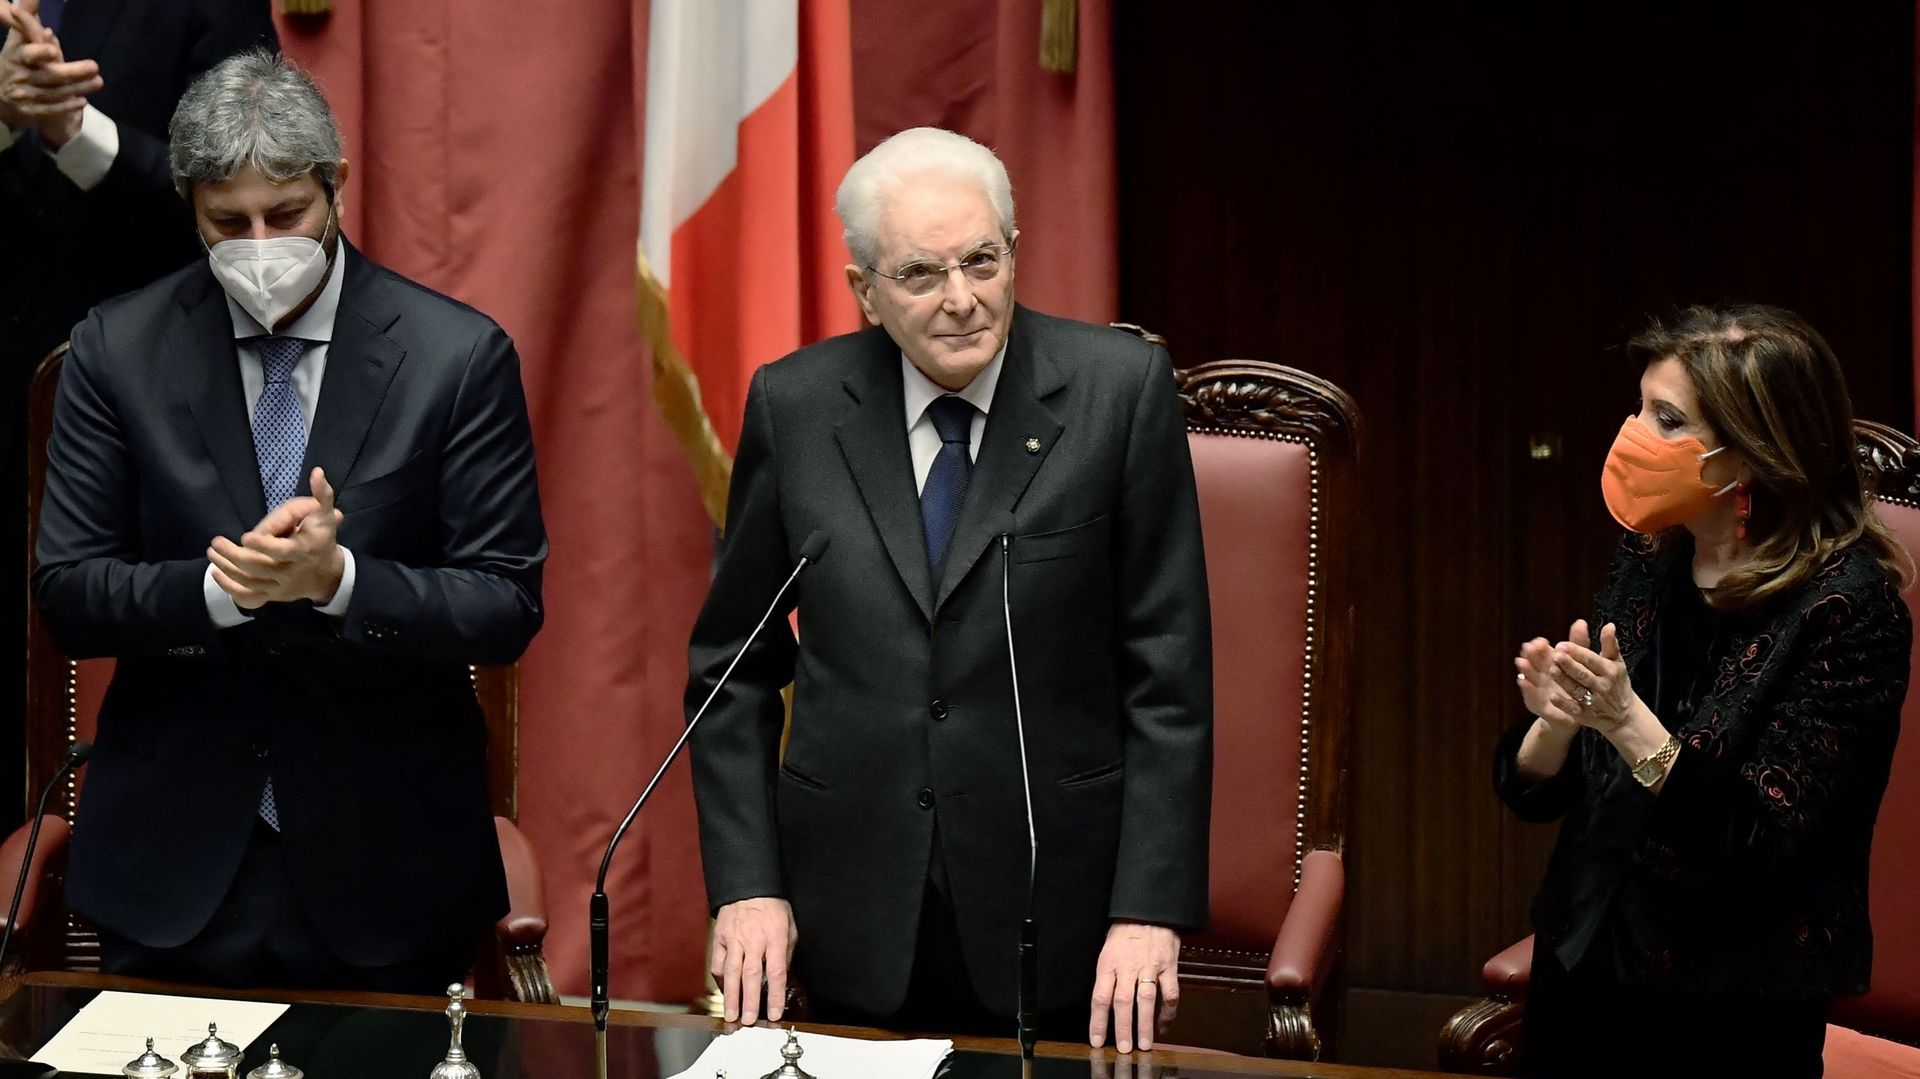 Cérémonie de prestation de serment du 13e président italien réélu, Sergio Mattarella, au Parlement, au palais Montecitorio de Rome, le 3 janvier 2022.